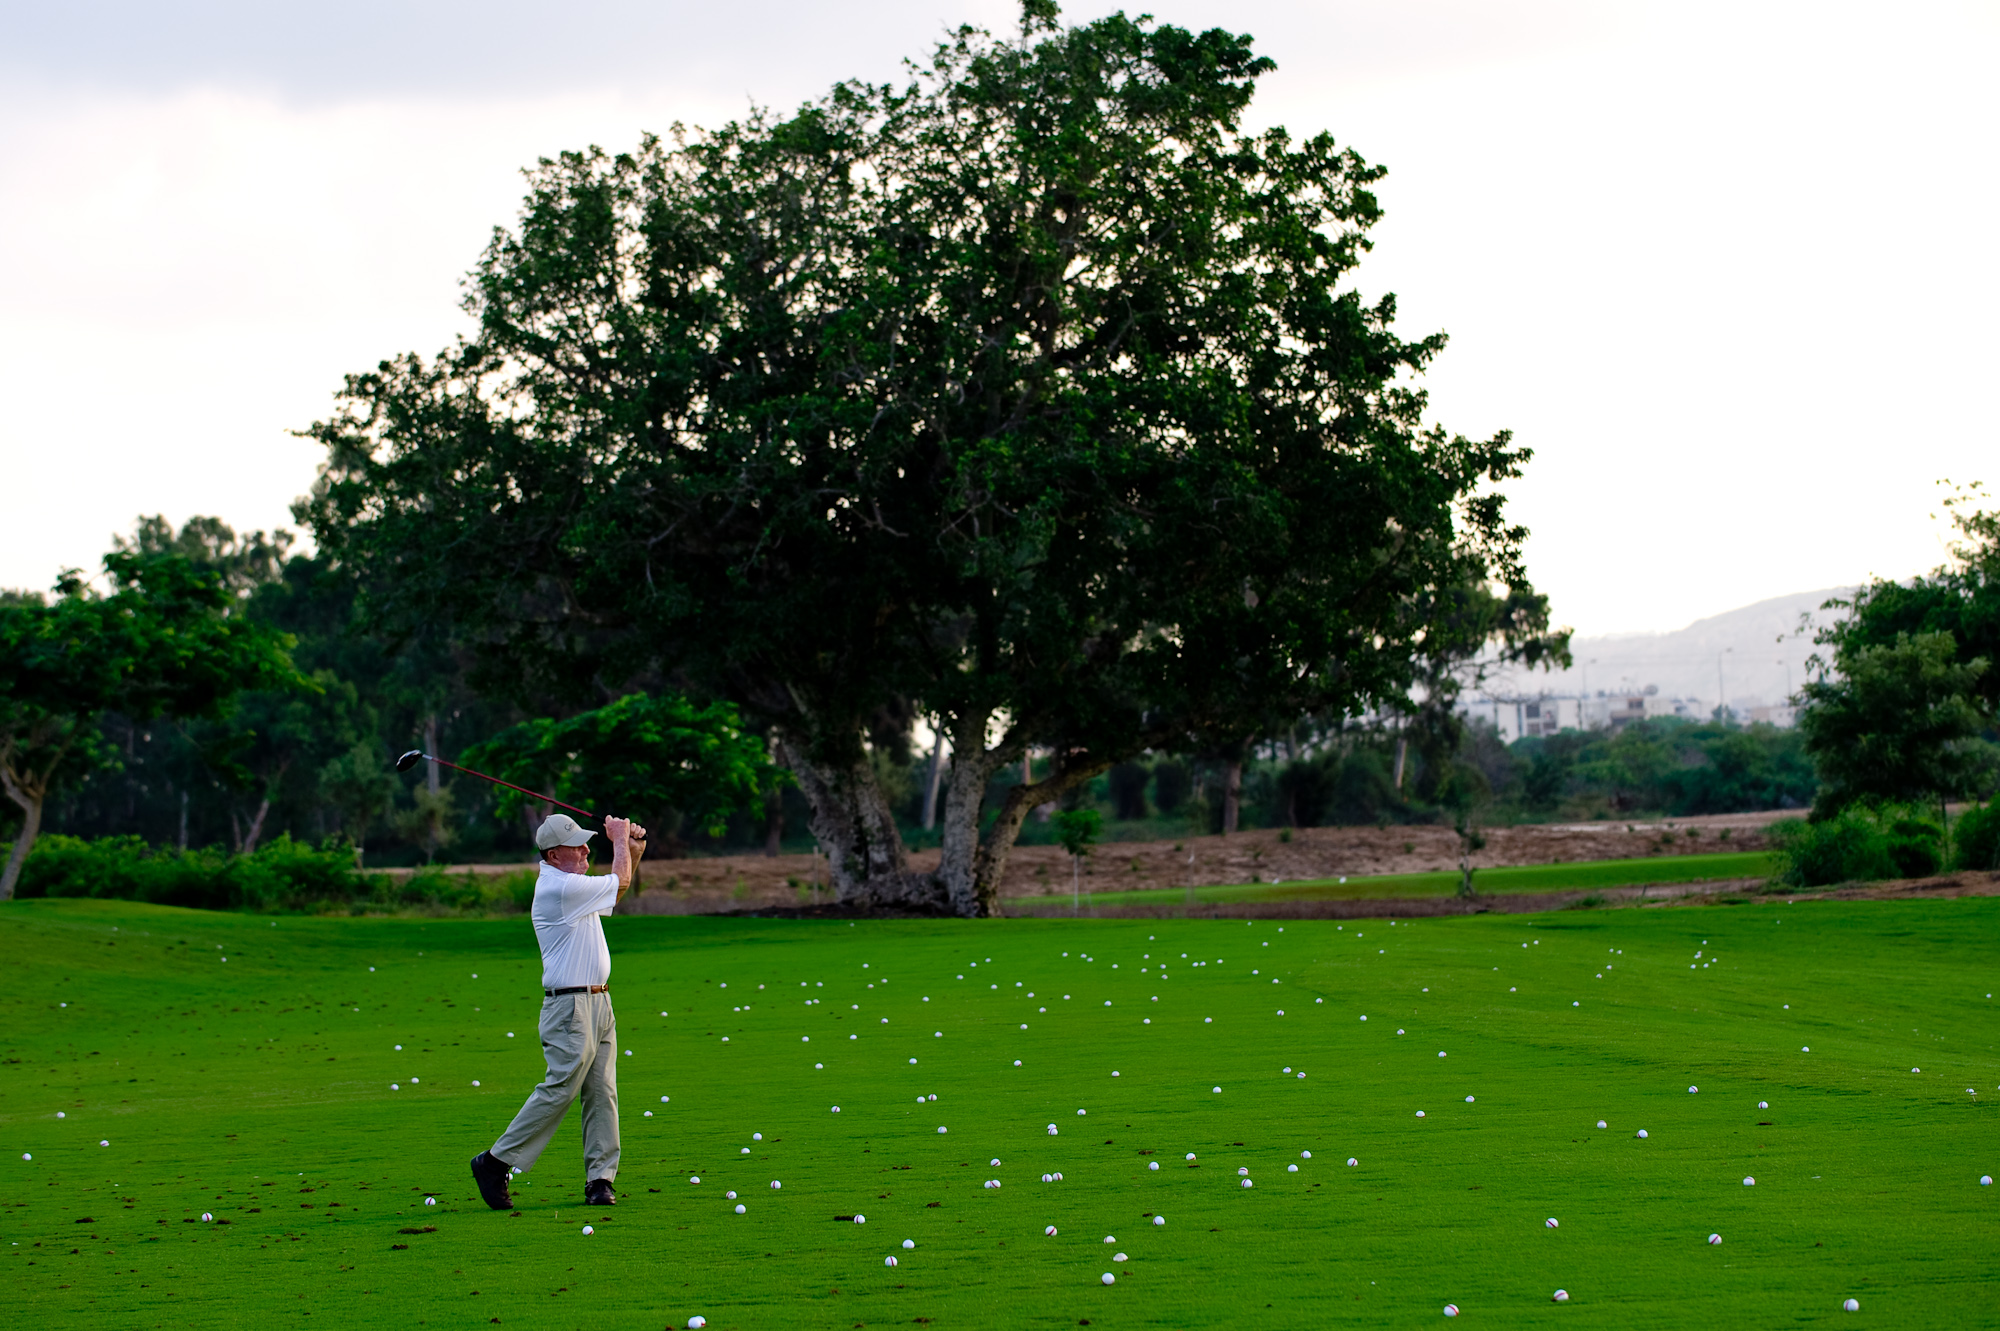 האדריכל פיט דאי ניצב על הדשא כשהוא מניף מחבט גולף. על הדשא פזורים עשרות כדורי גולף ועץ רחב צמרת עומד ברקע